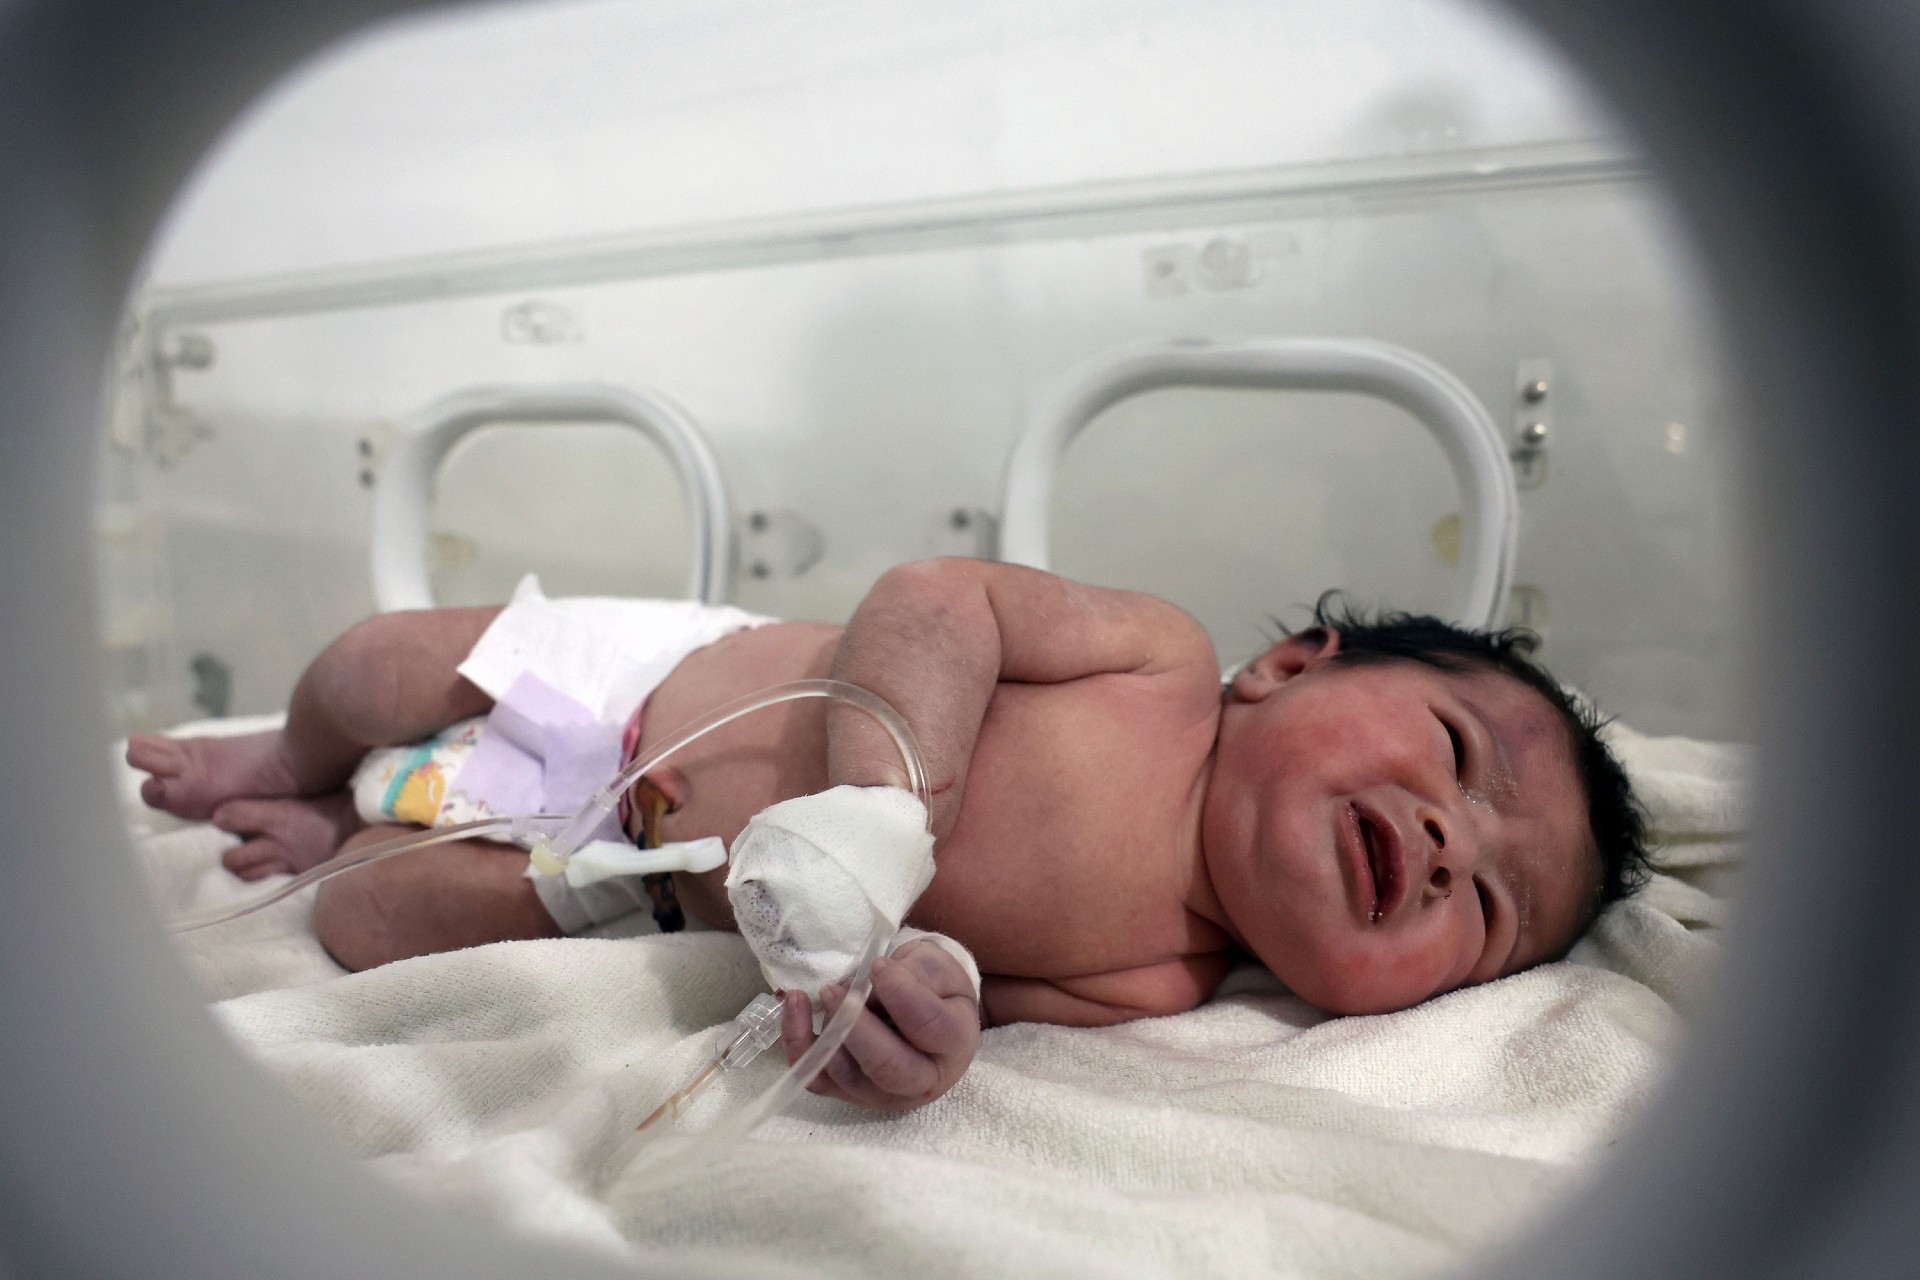 Una niña que fue rescatada recibe tratamiento dentro de una incubadora en un hospital en Afrin, Siria, este martes. (Ghaith Alsayed/AP)